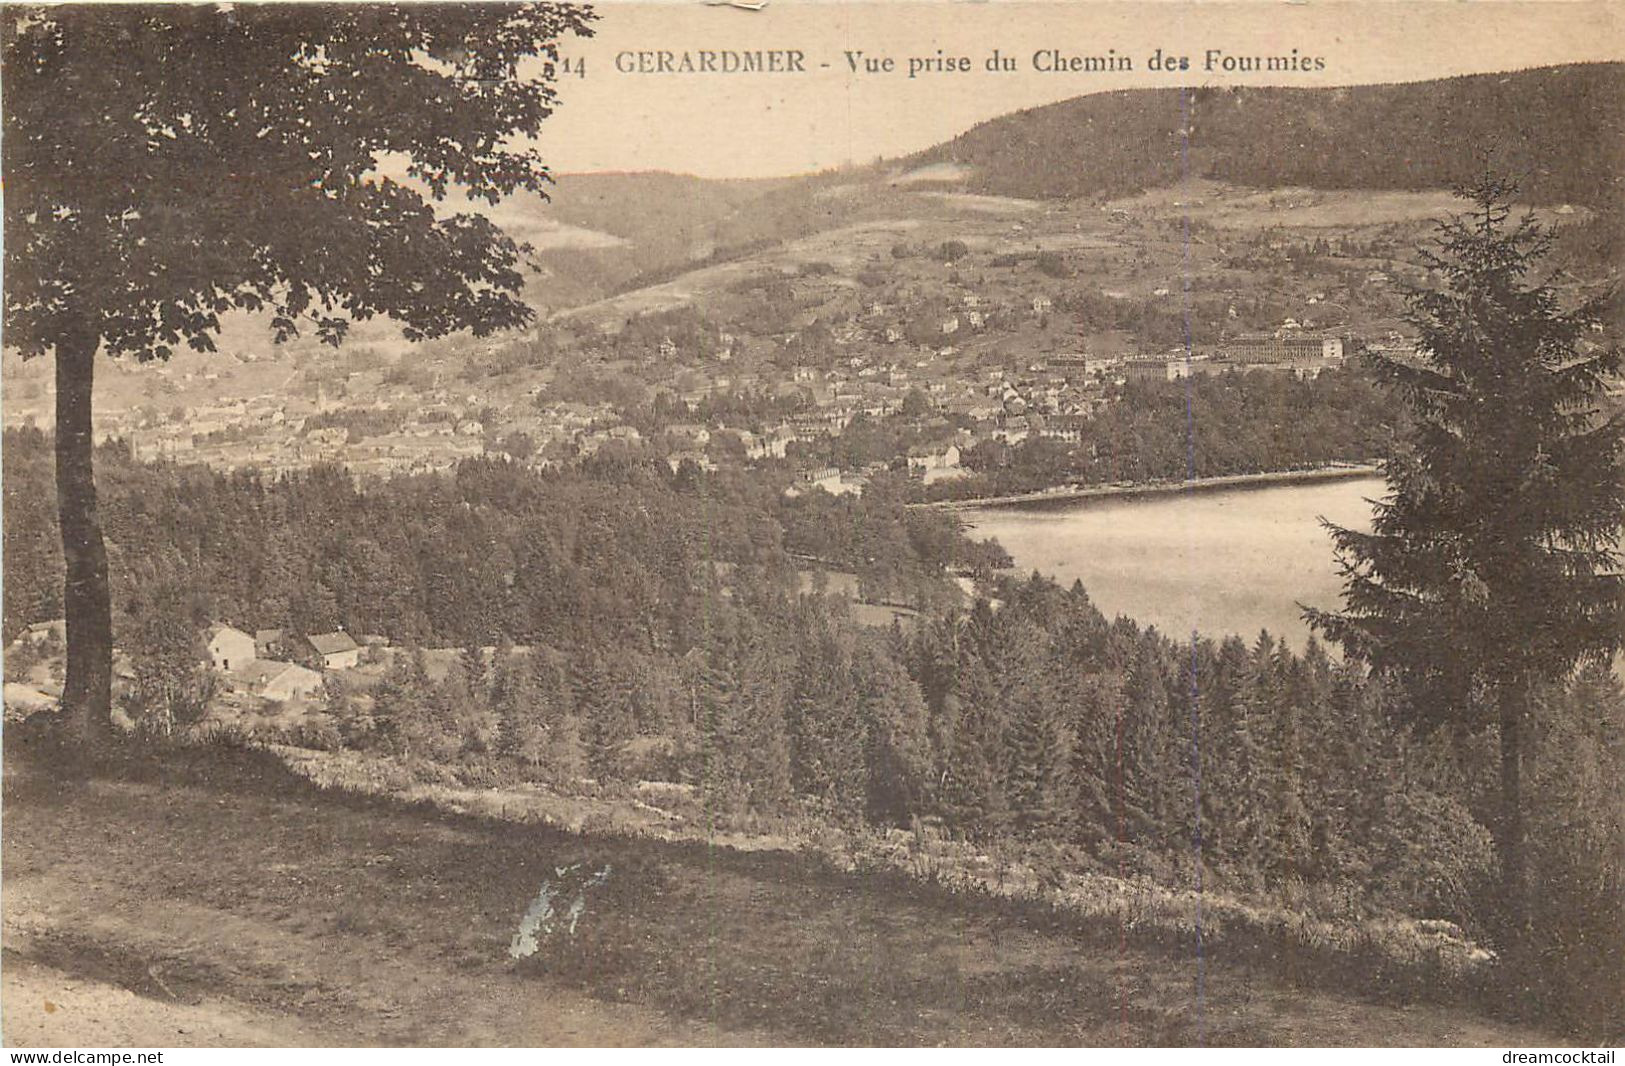 (S) Superbe LOT n°16 de 50 cartes postales anciennes régionalisme dont Châteaux